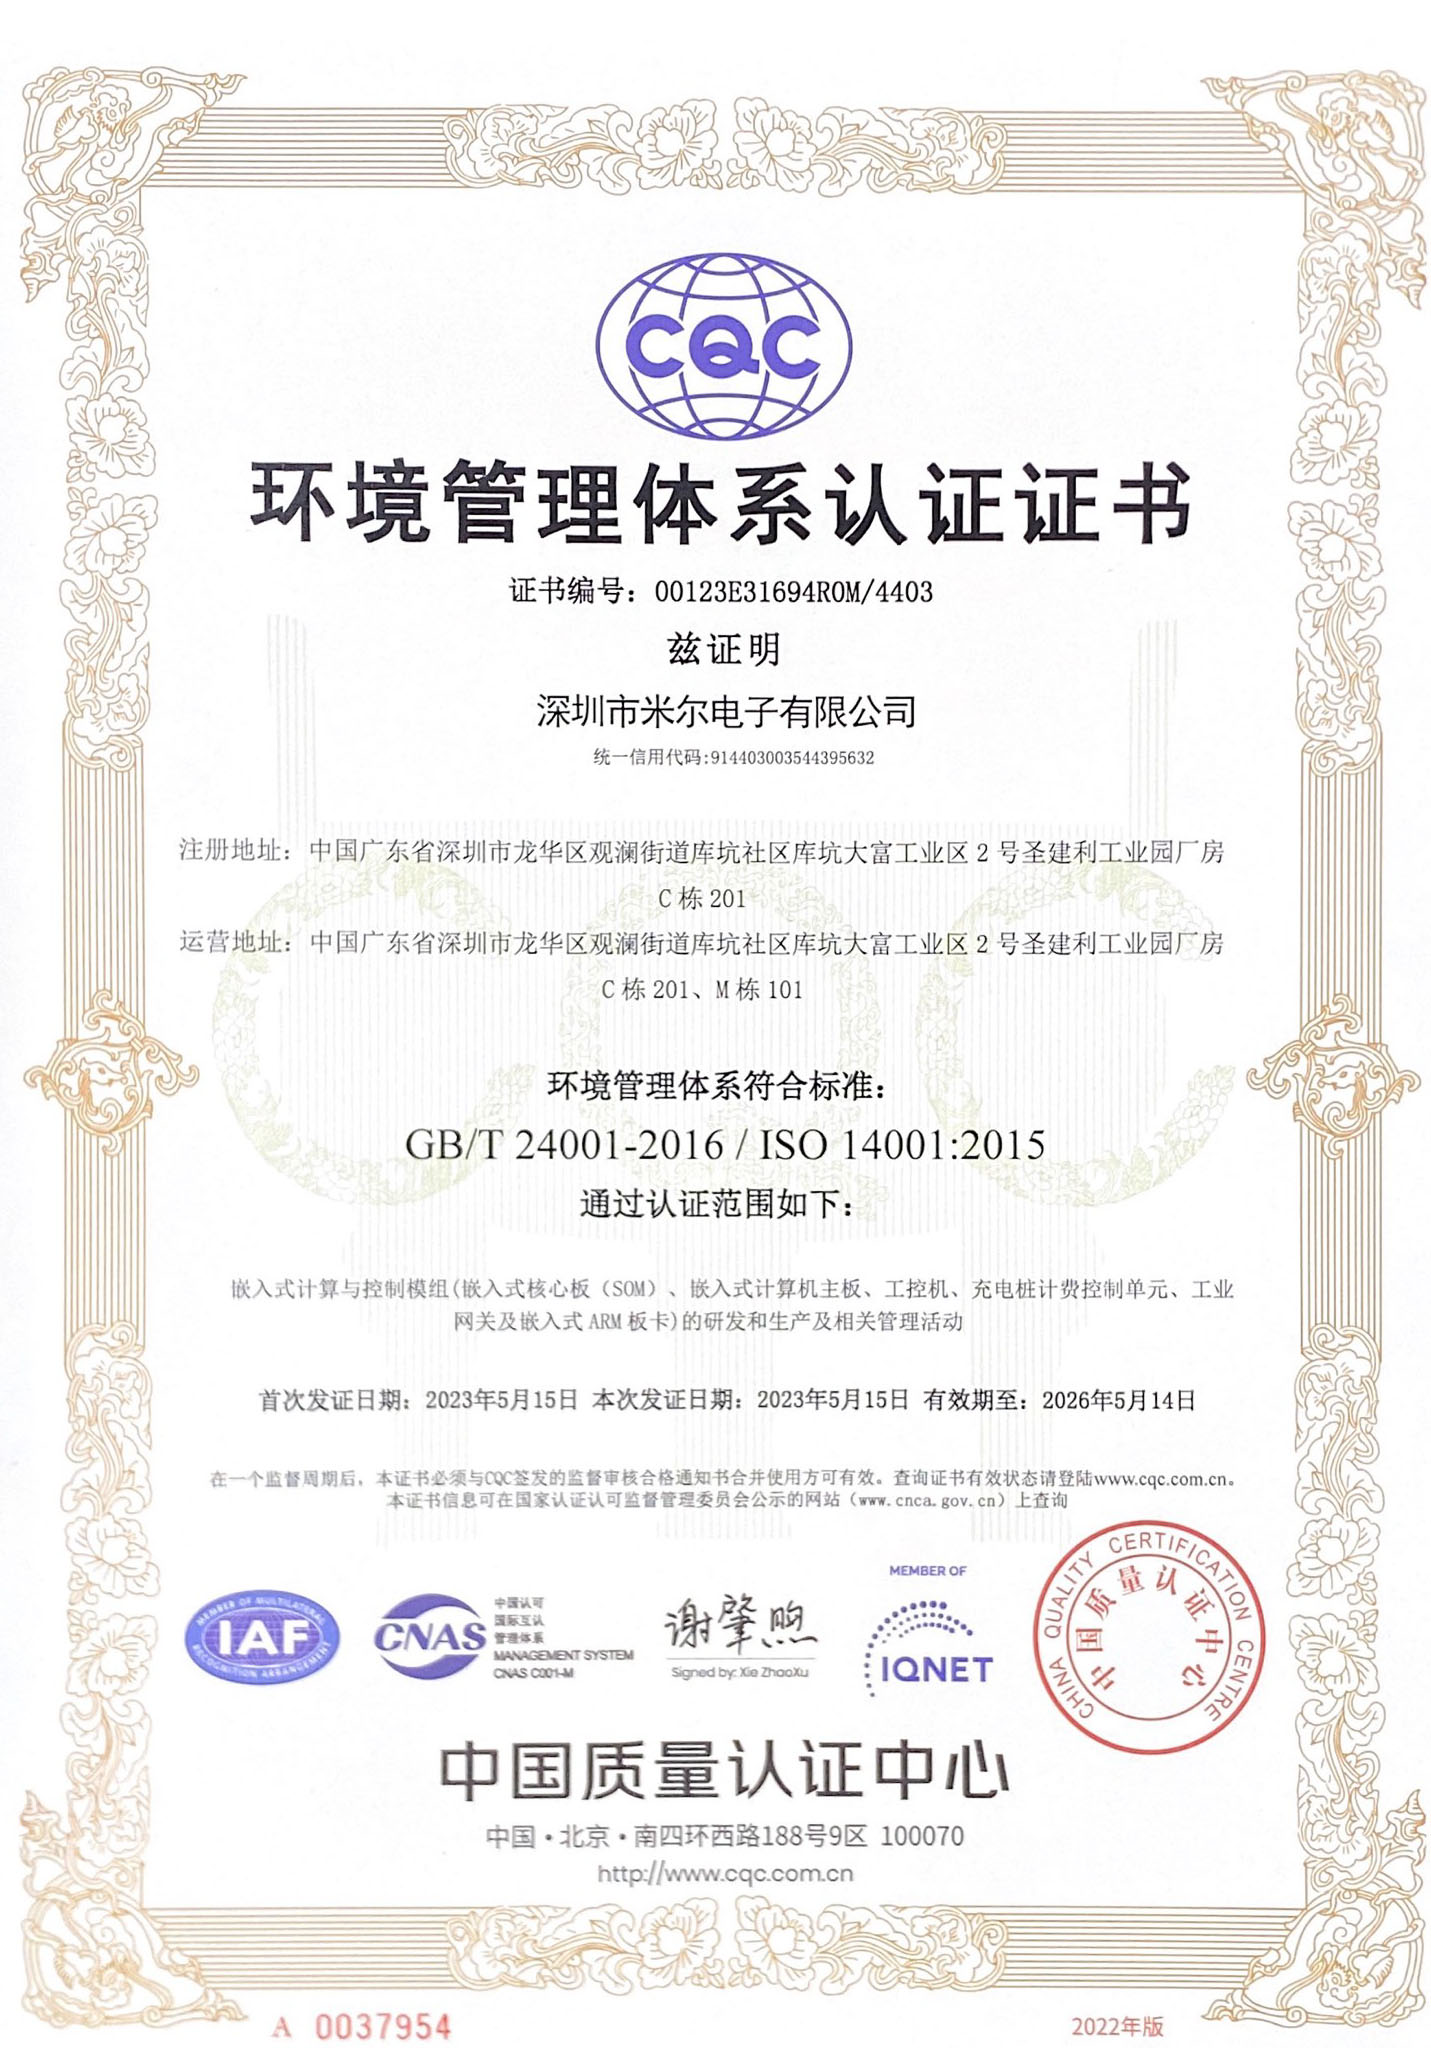 网上电子AG捕鱼王ISO14001认证证书-中文版